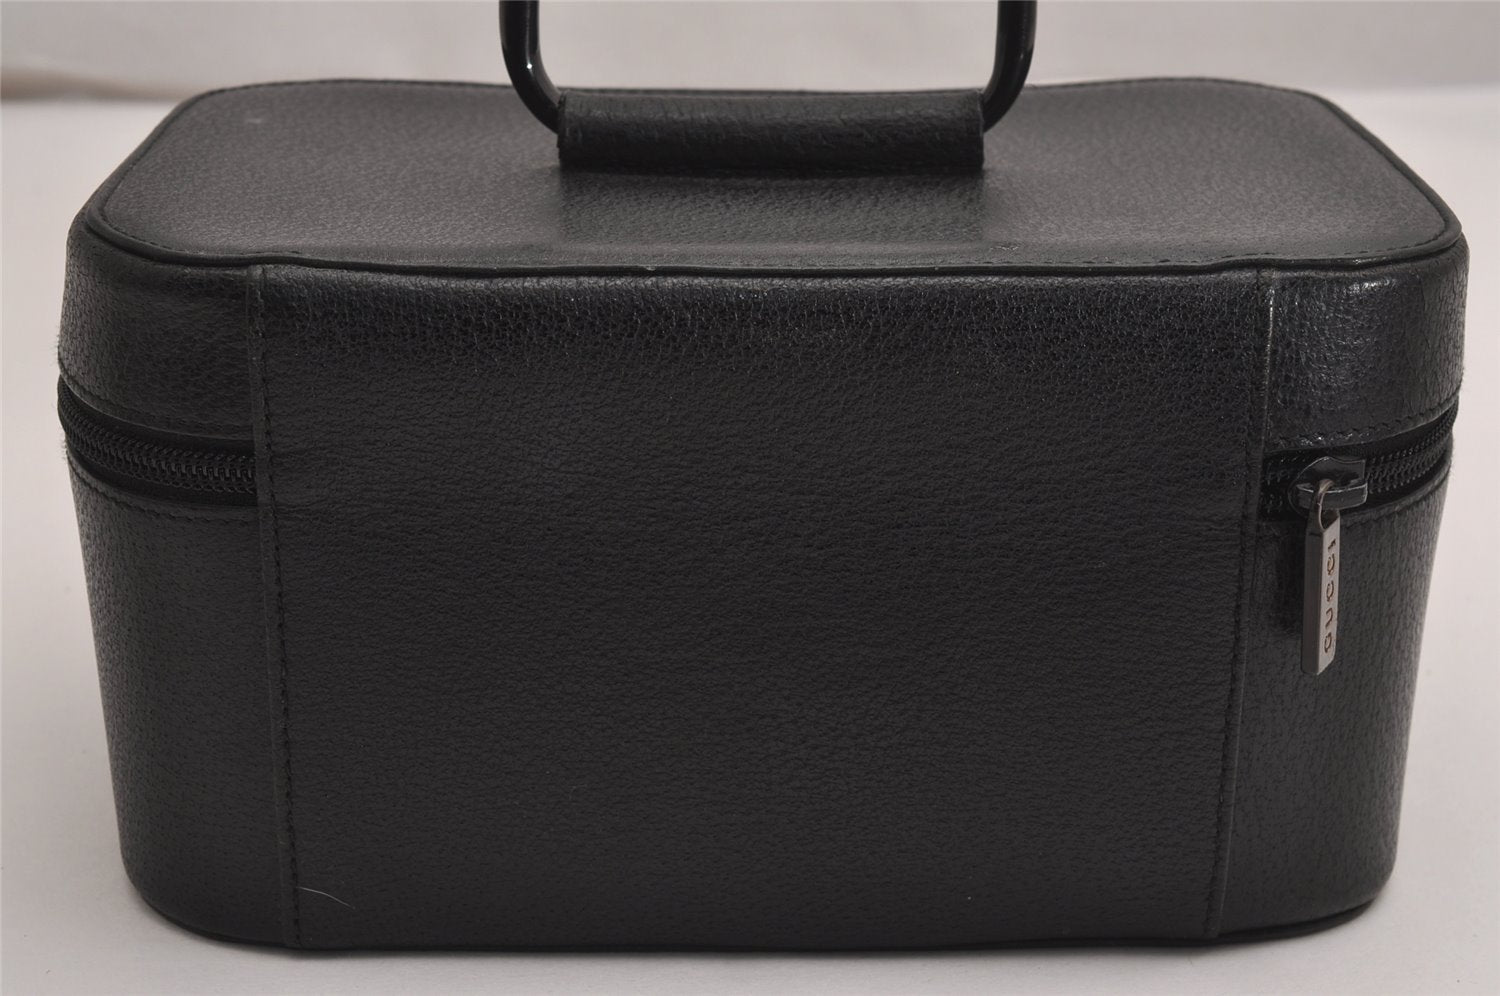 Authentic GUCCI Vintage Vanity Case Hand Bag Pouch Purse Leather Black 3587J